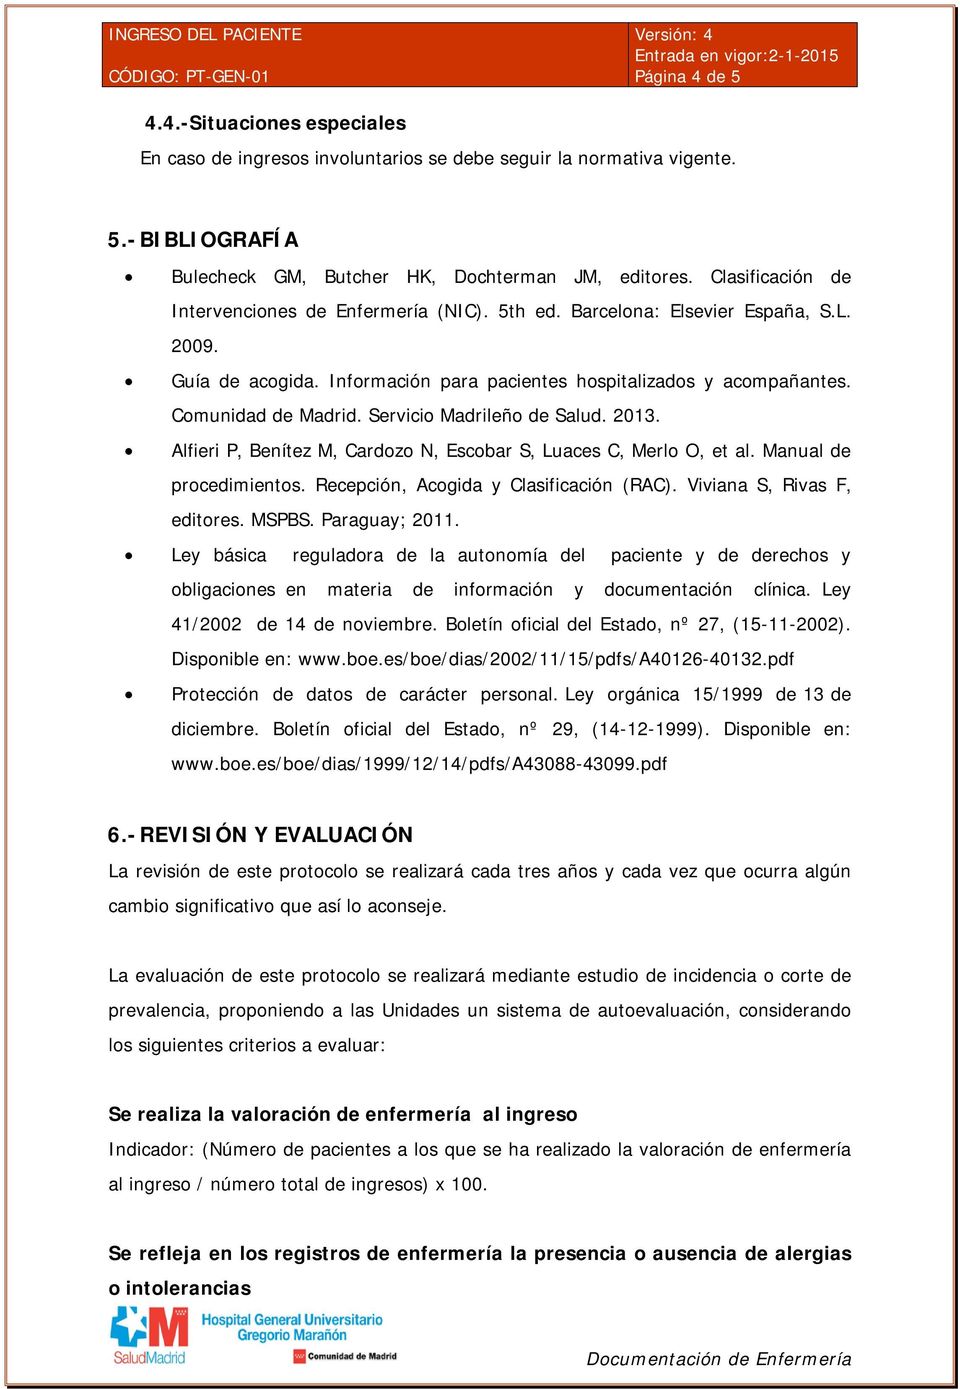 Servicio Madrileño de Salud. 2013. Alfieri P, Benítez M, Cardozo N, Escobar S, Luaces C, Merlo O, et al. Manual de procedimientos. Recepción, Acogida y Clasificación (RAC).